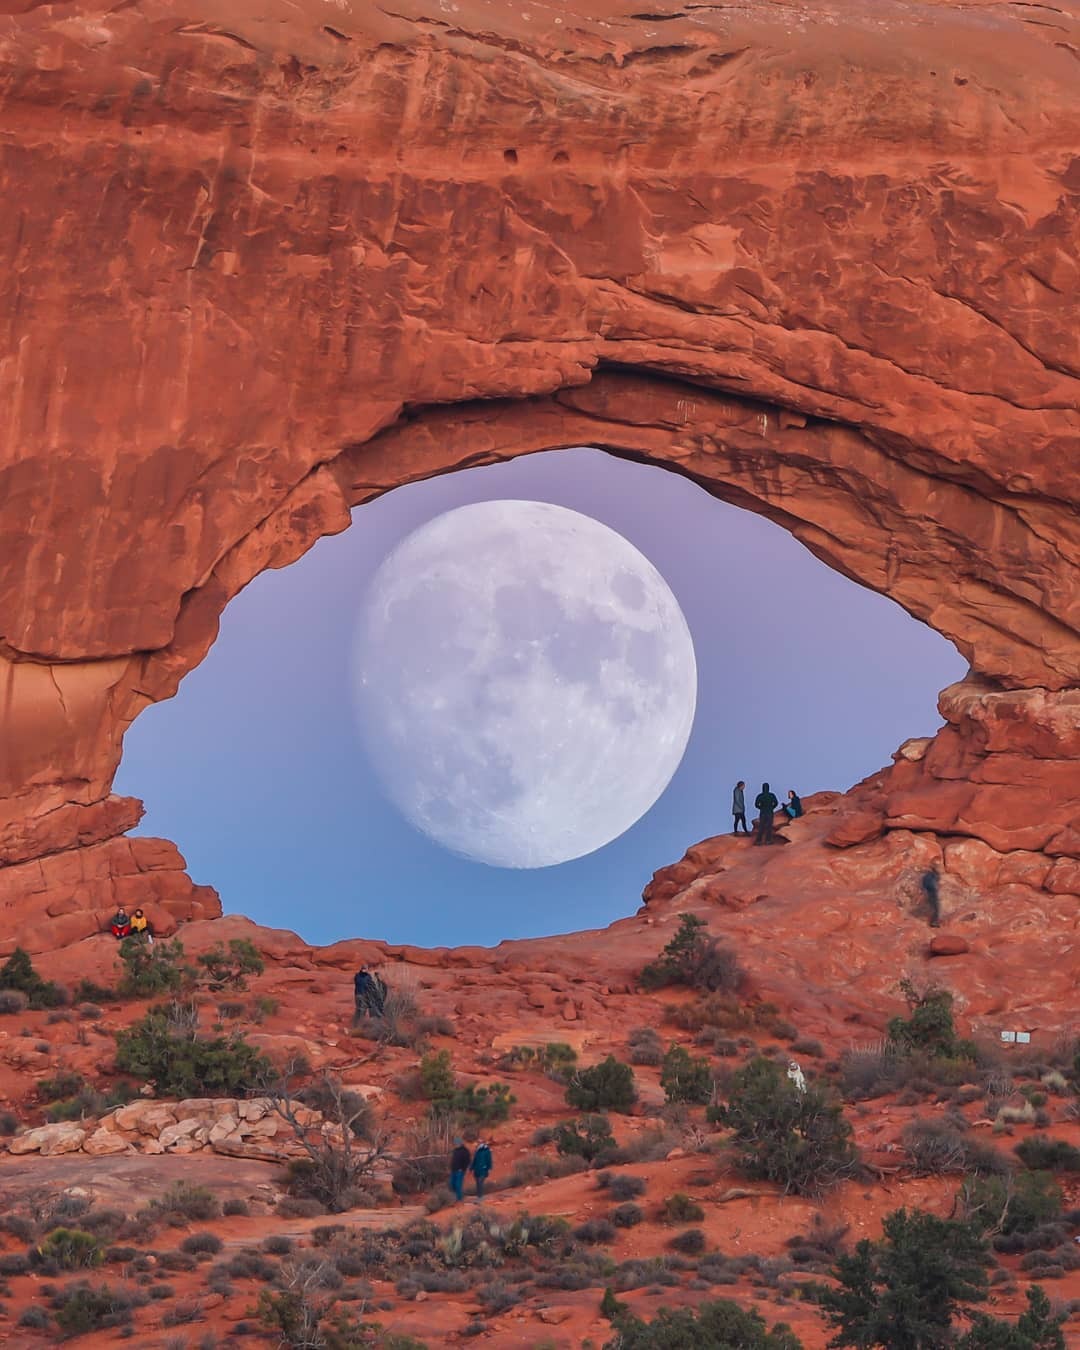 صورا للقمر خلف قوس صخرى تشبه العين بولاية يوتا الأمريكية (1)